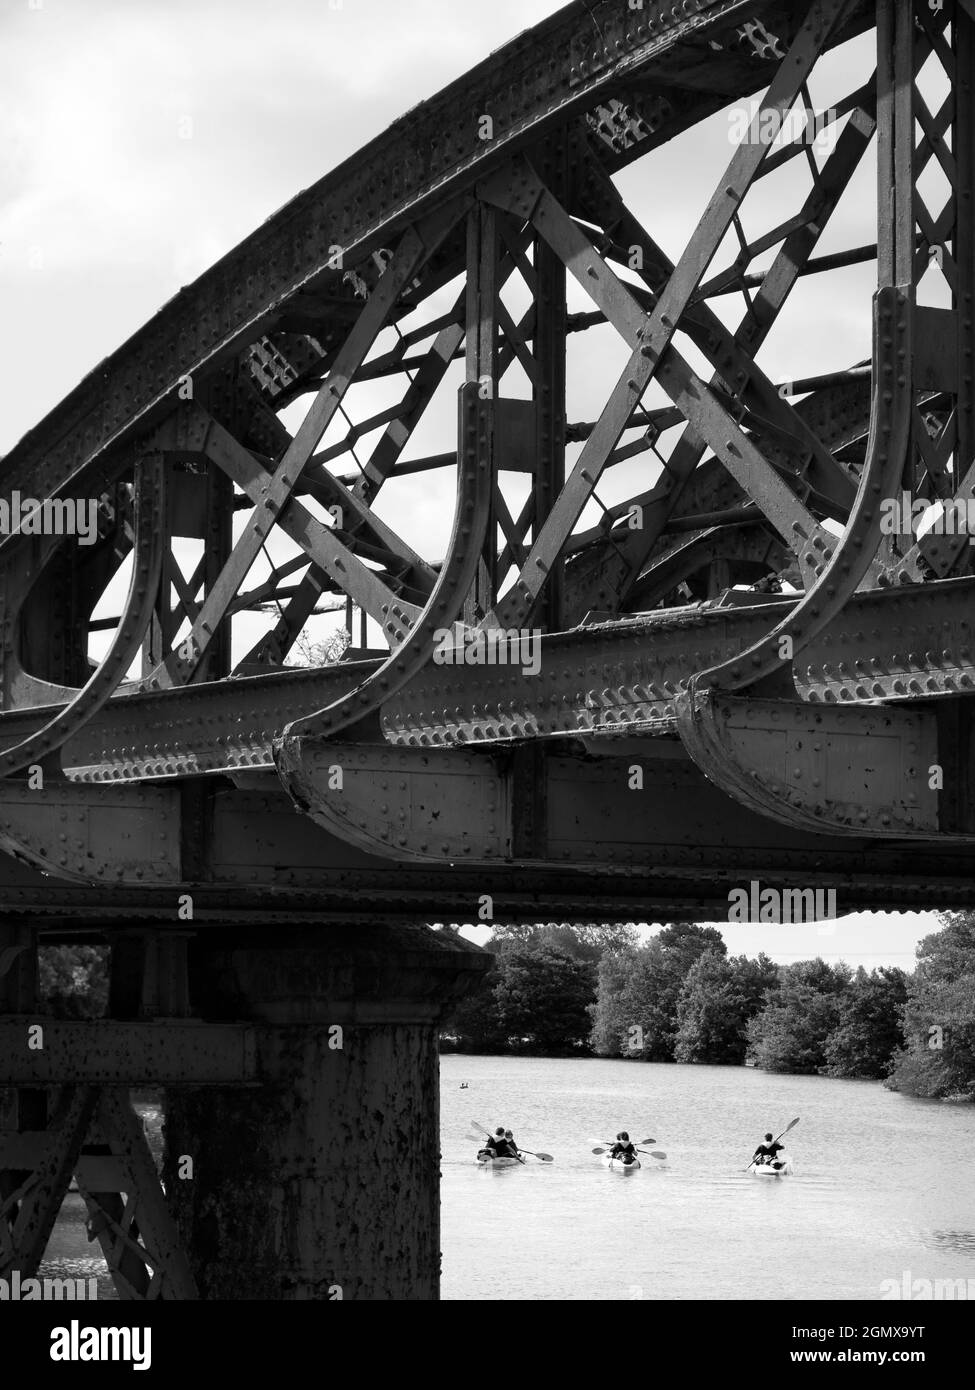 Kennington, Oxfordshire, England - 13. Juli 2019; sechs Kanufahrer in Schuss. Hier sehen wir eine verlassene Brücke über die Themse bei Kennington, nur etwas außerhalb Stockfoto